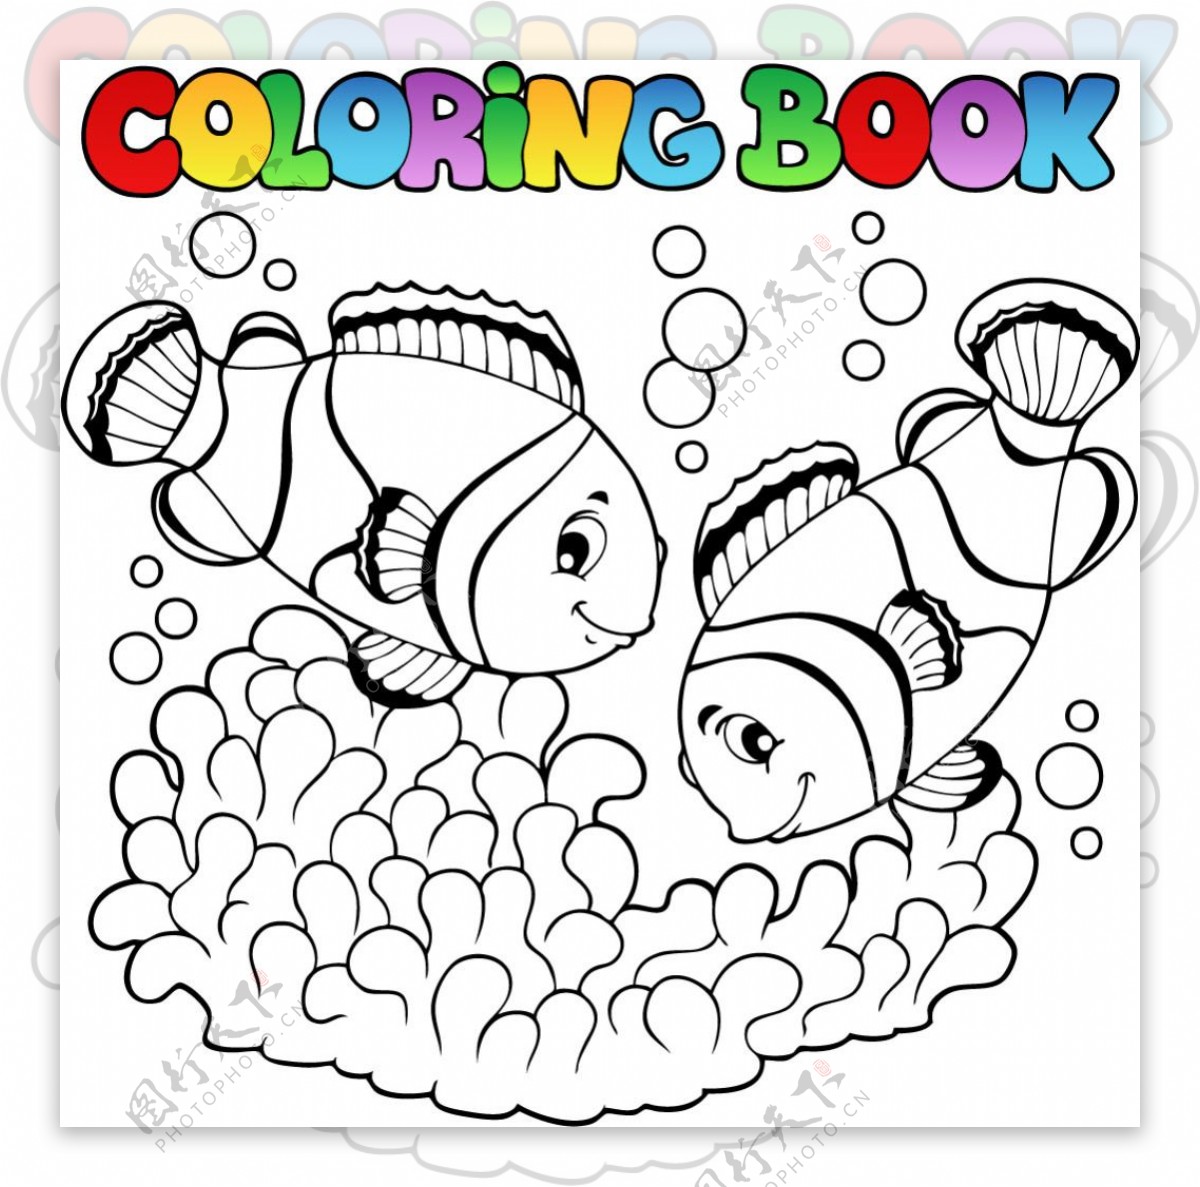 彩色图片海洋世界鱼类珊瑚矢量模板